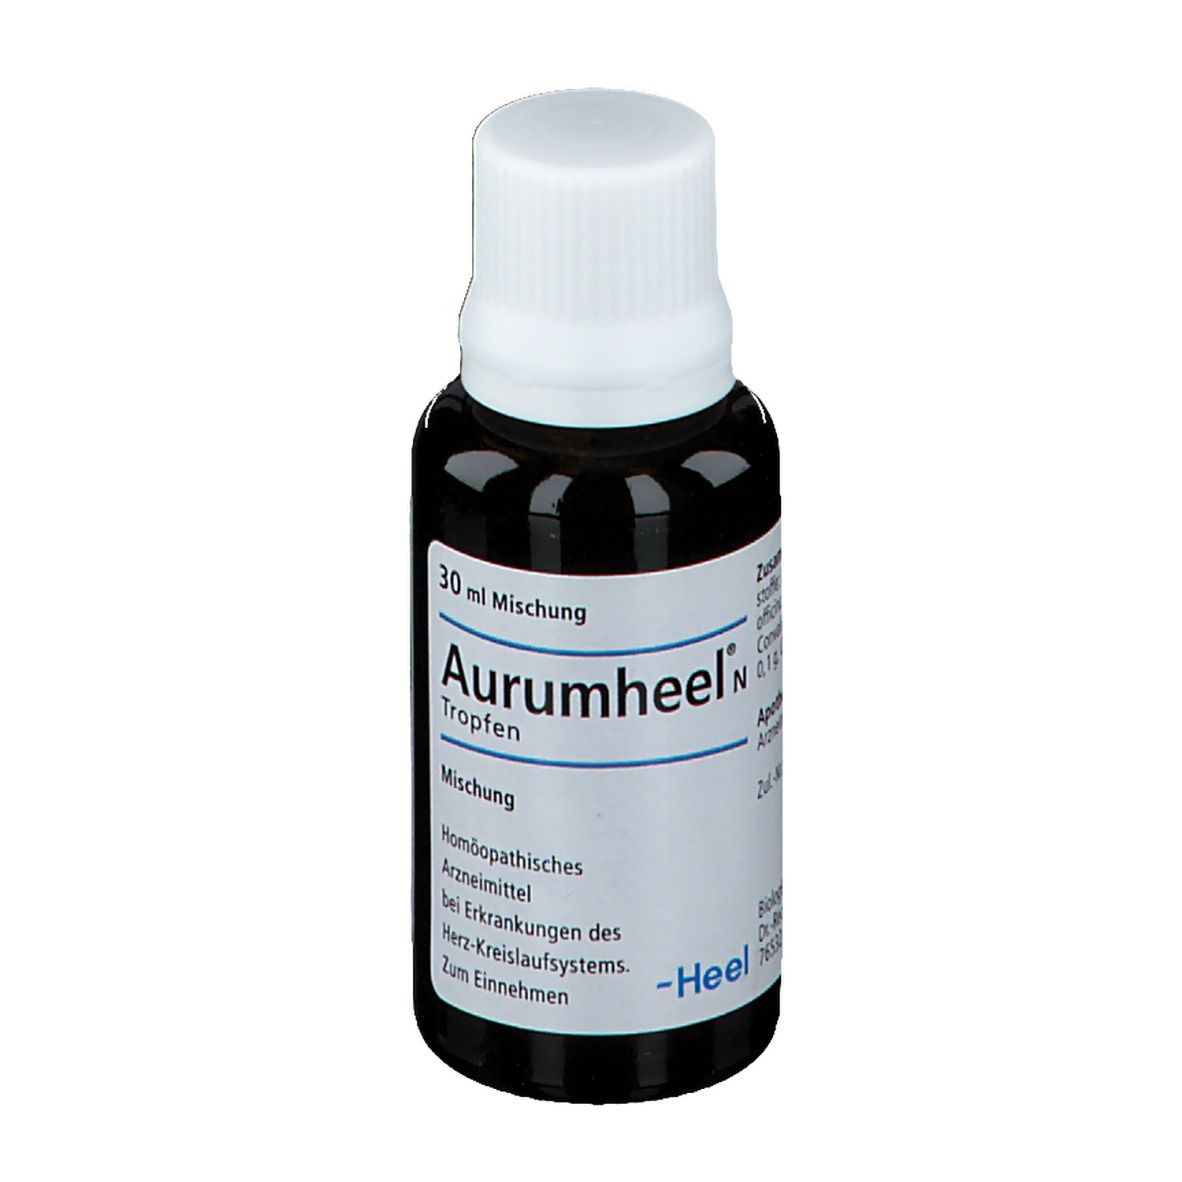 Aurumheel® N Tropfen